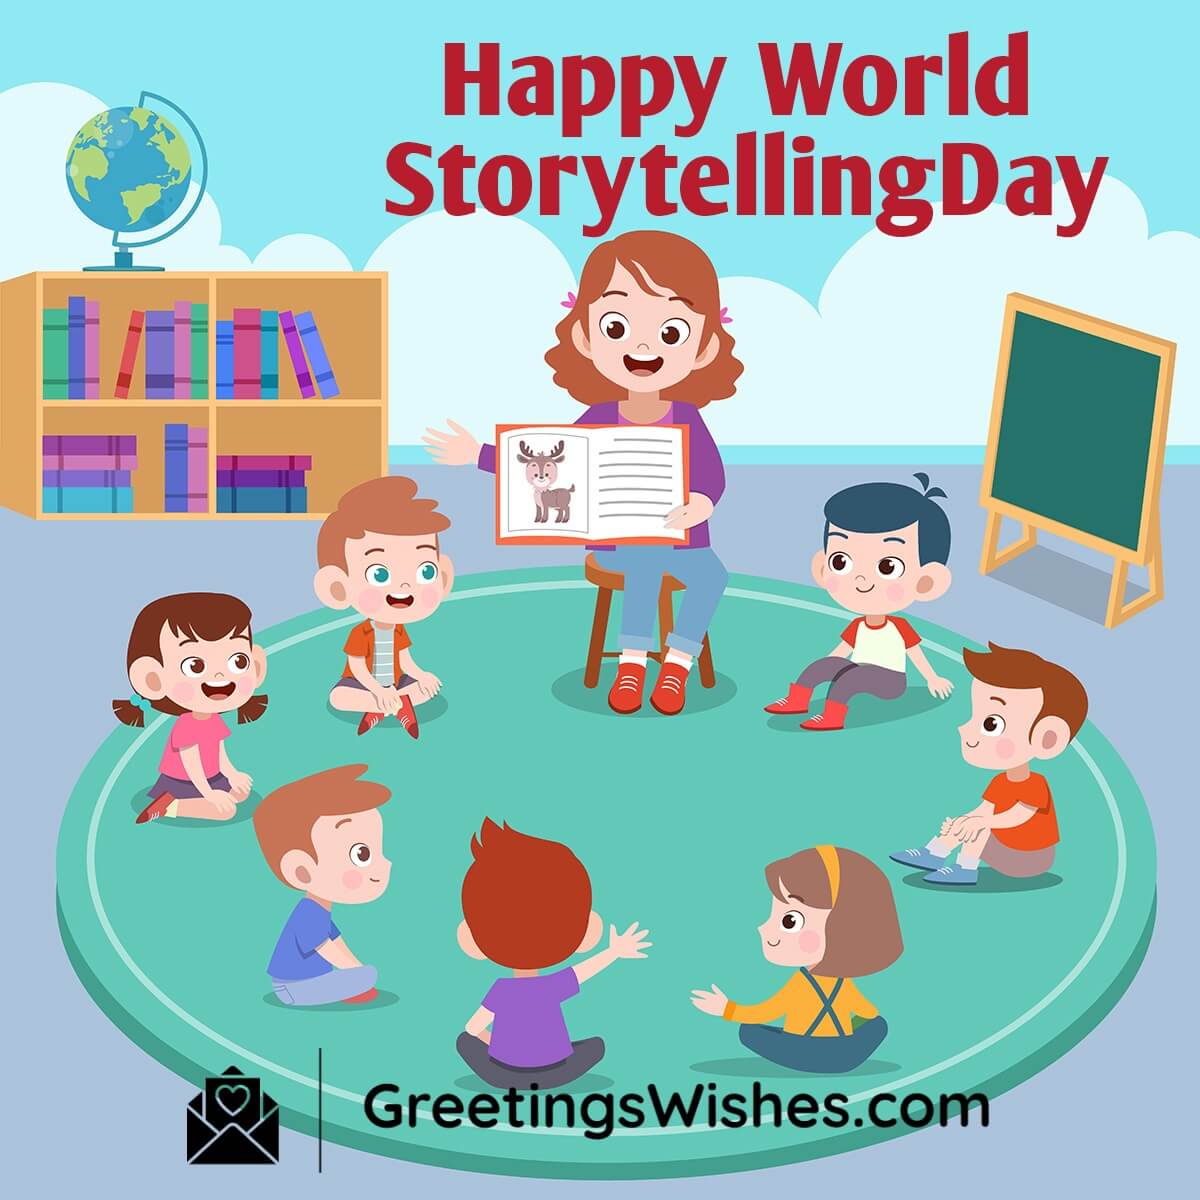 Happy World Storytelling Day 